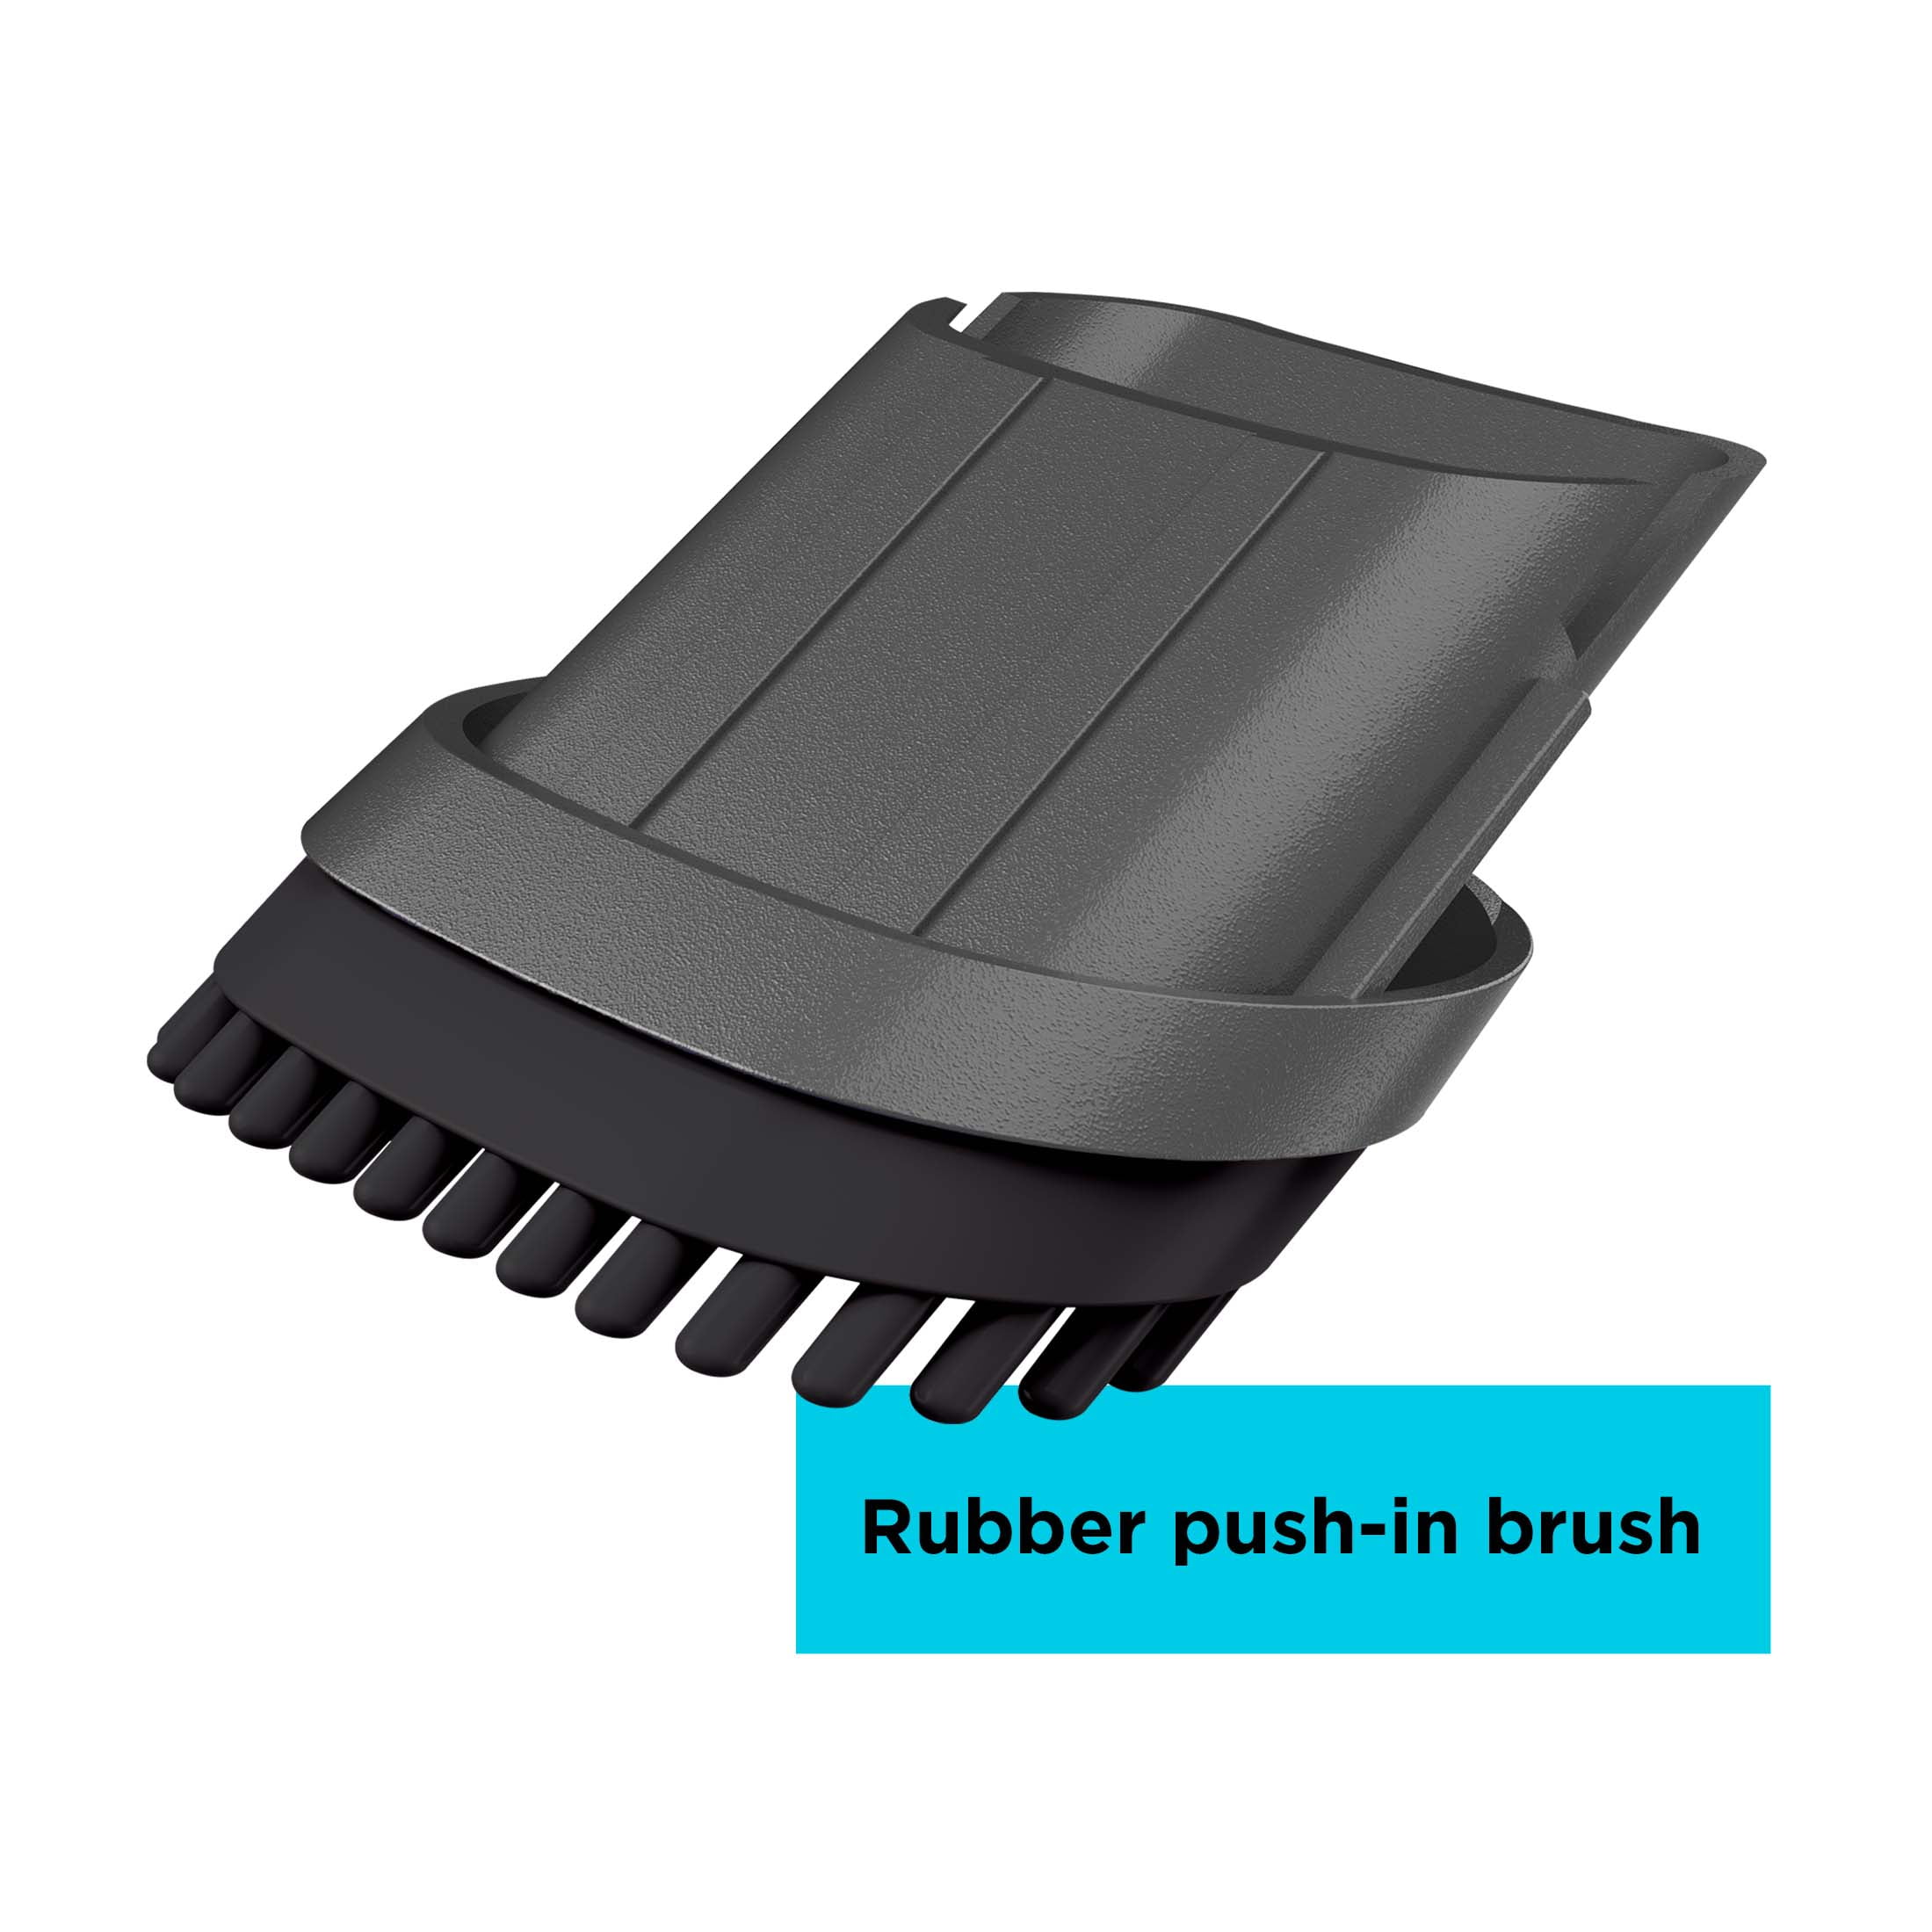 Black+decker Hnvc115j06 Dustbuster Quick Clean Hand Vacuum